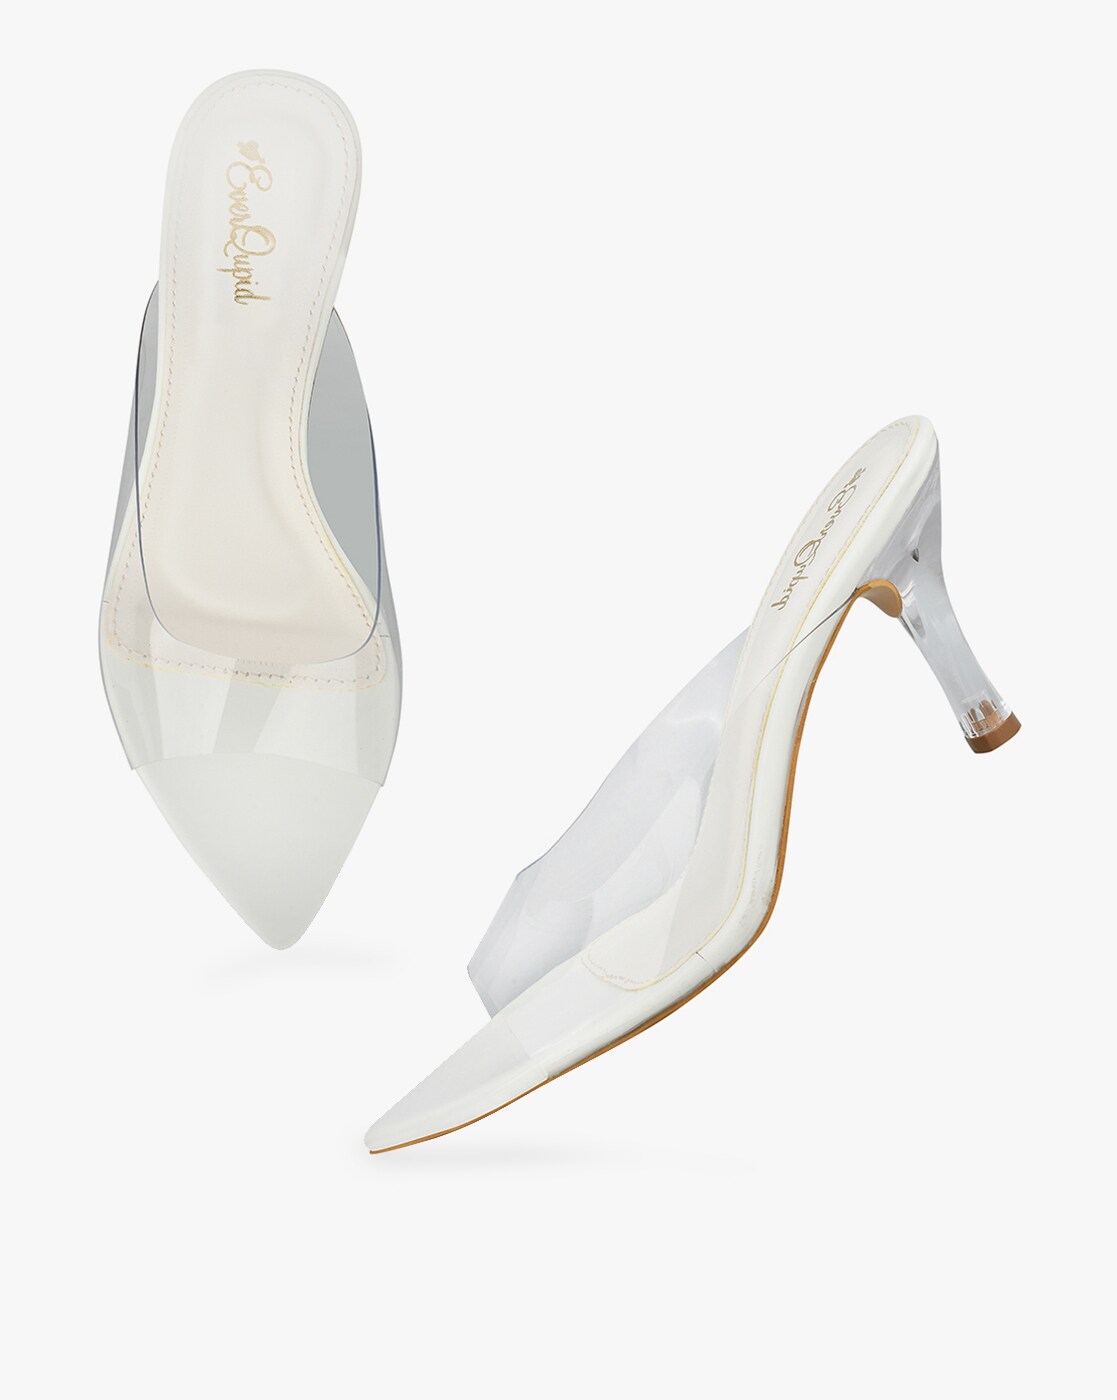 White 3 inch heels, Size 36, Women's Fashion, Footwear, Heels on Carousell